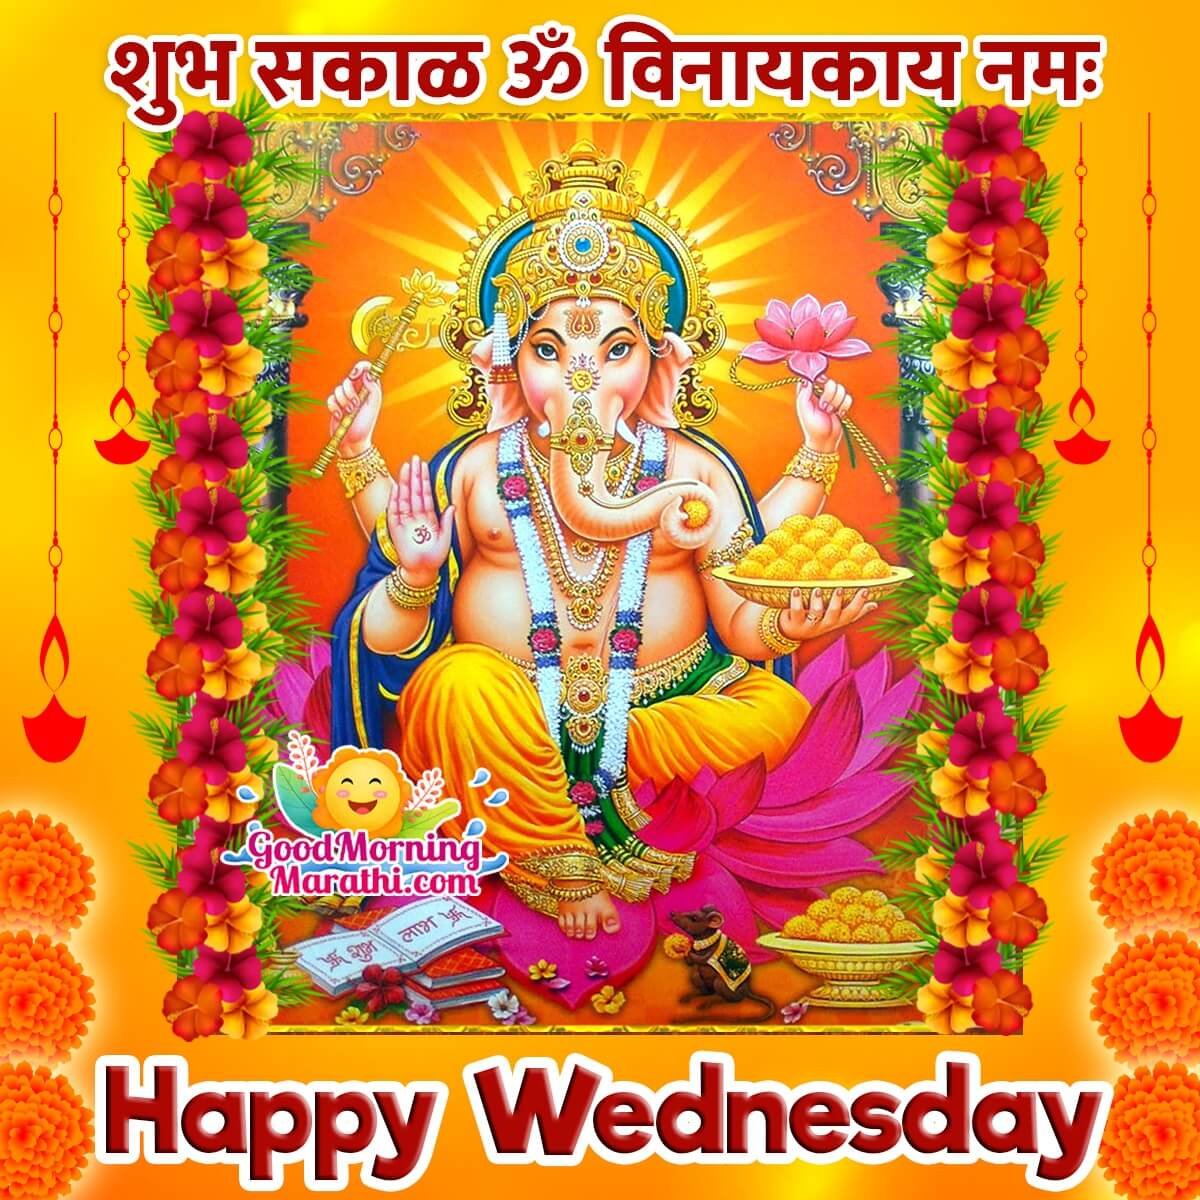 Ganesha Wednesday Good Morning Images in Marathi